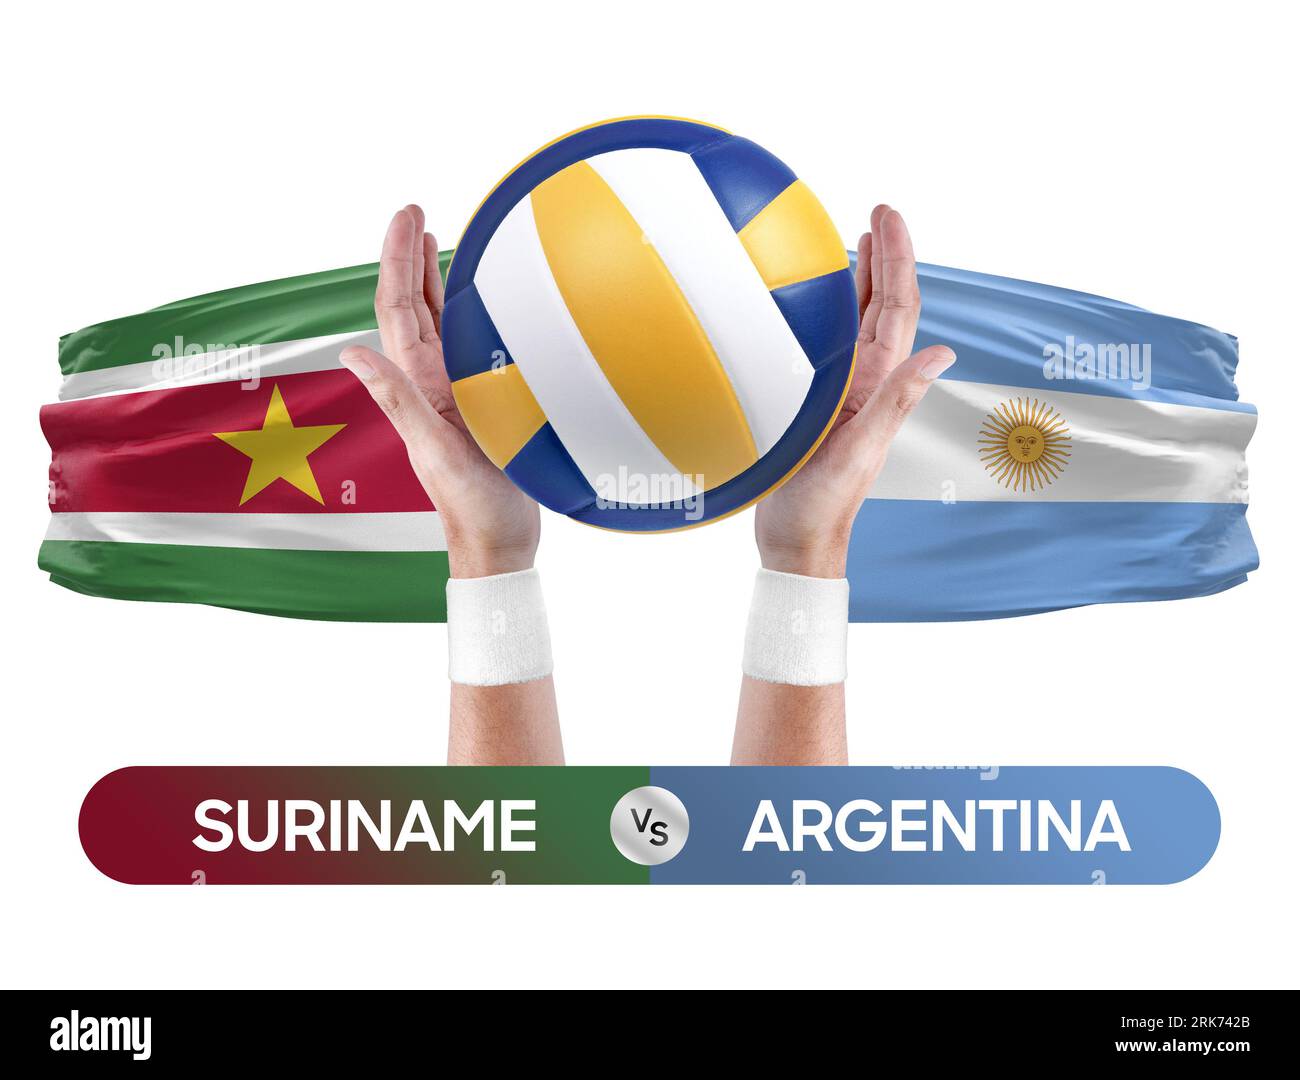 Suriname gegen Argentinien Nationalmannschaften Volleyball Volleyball-Ball-Match-Konzept. Stockfoto